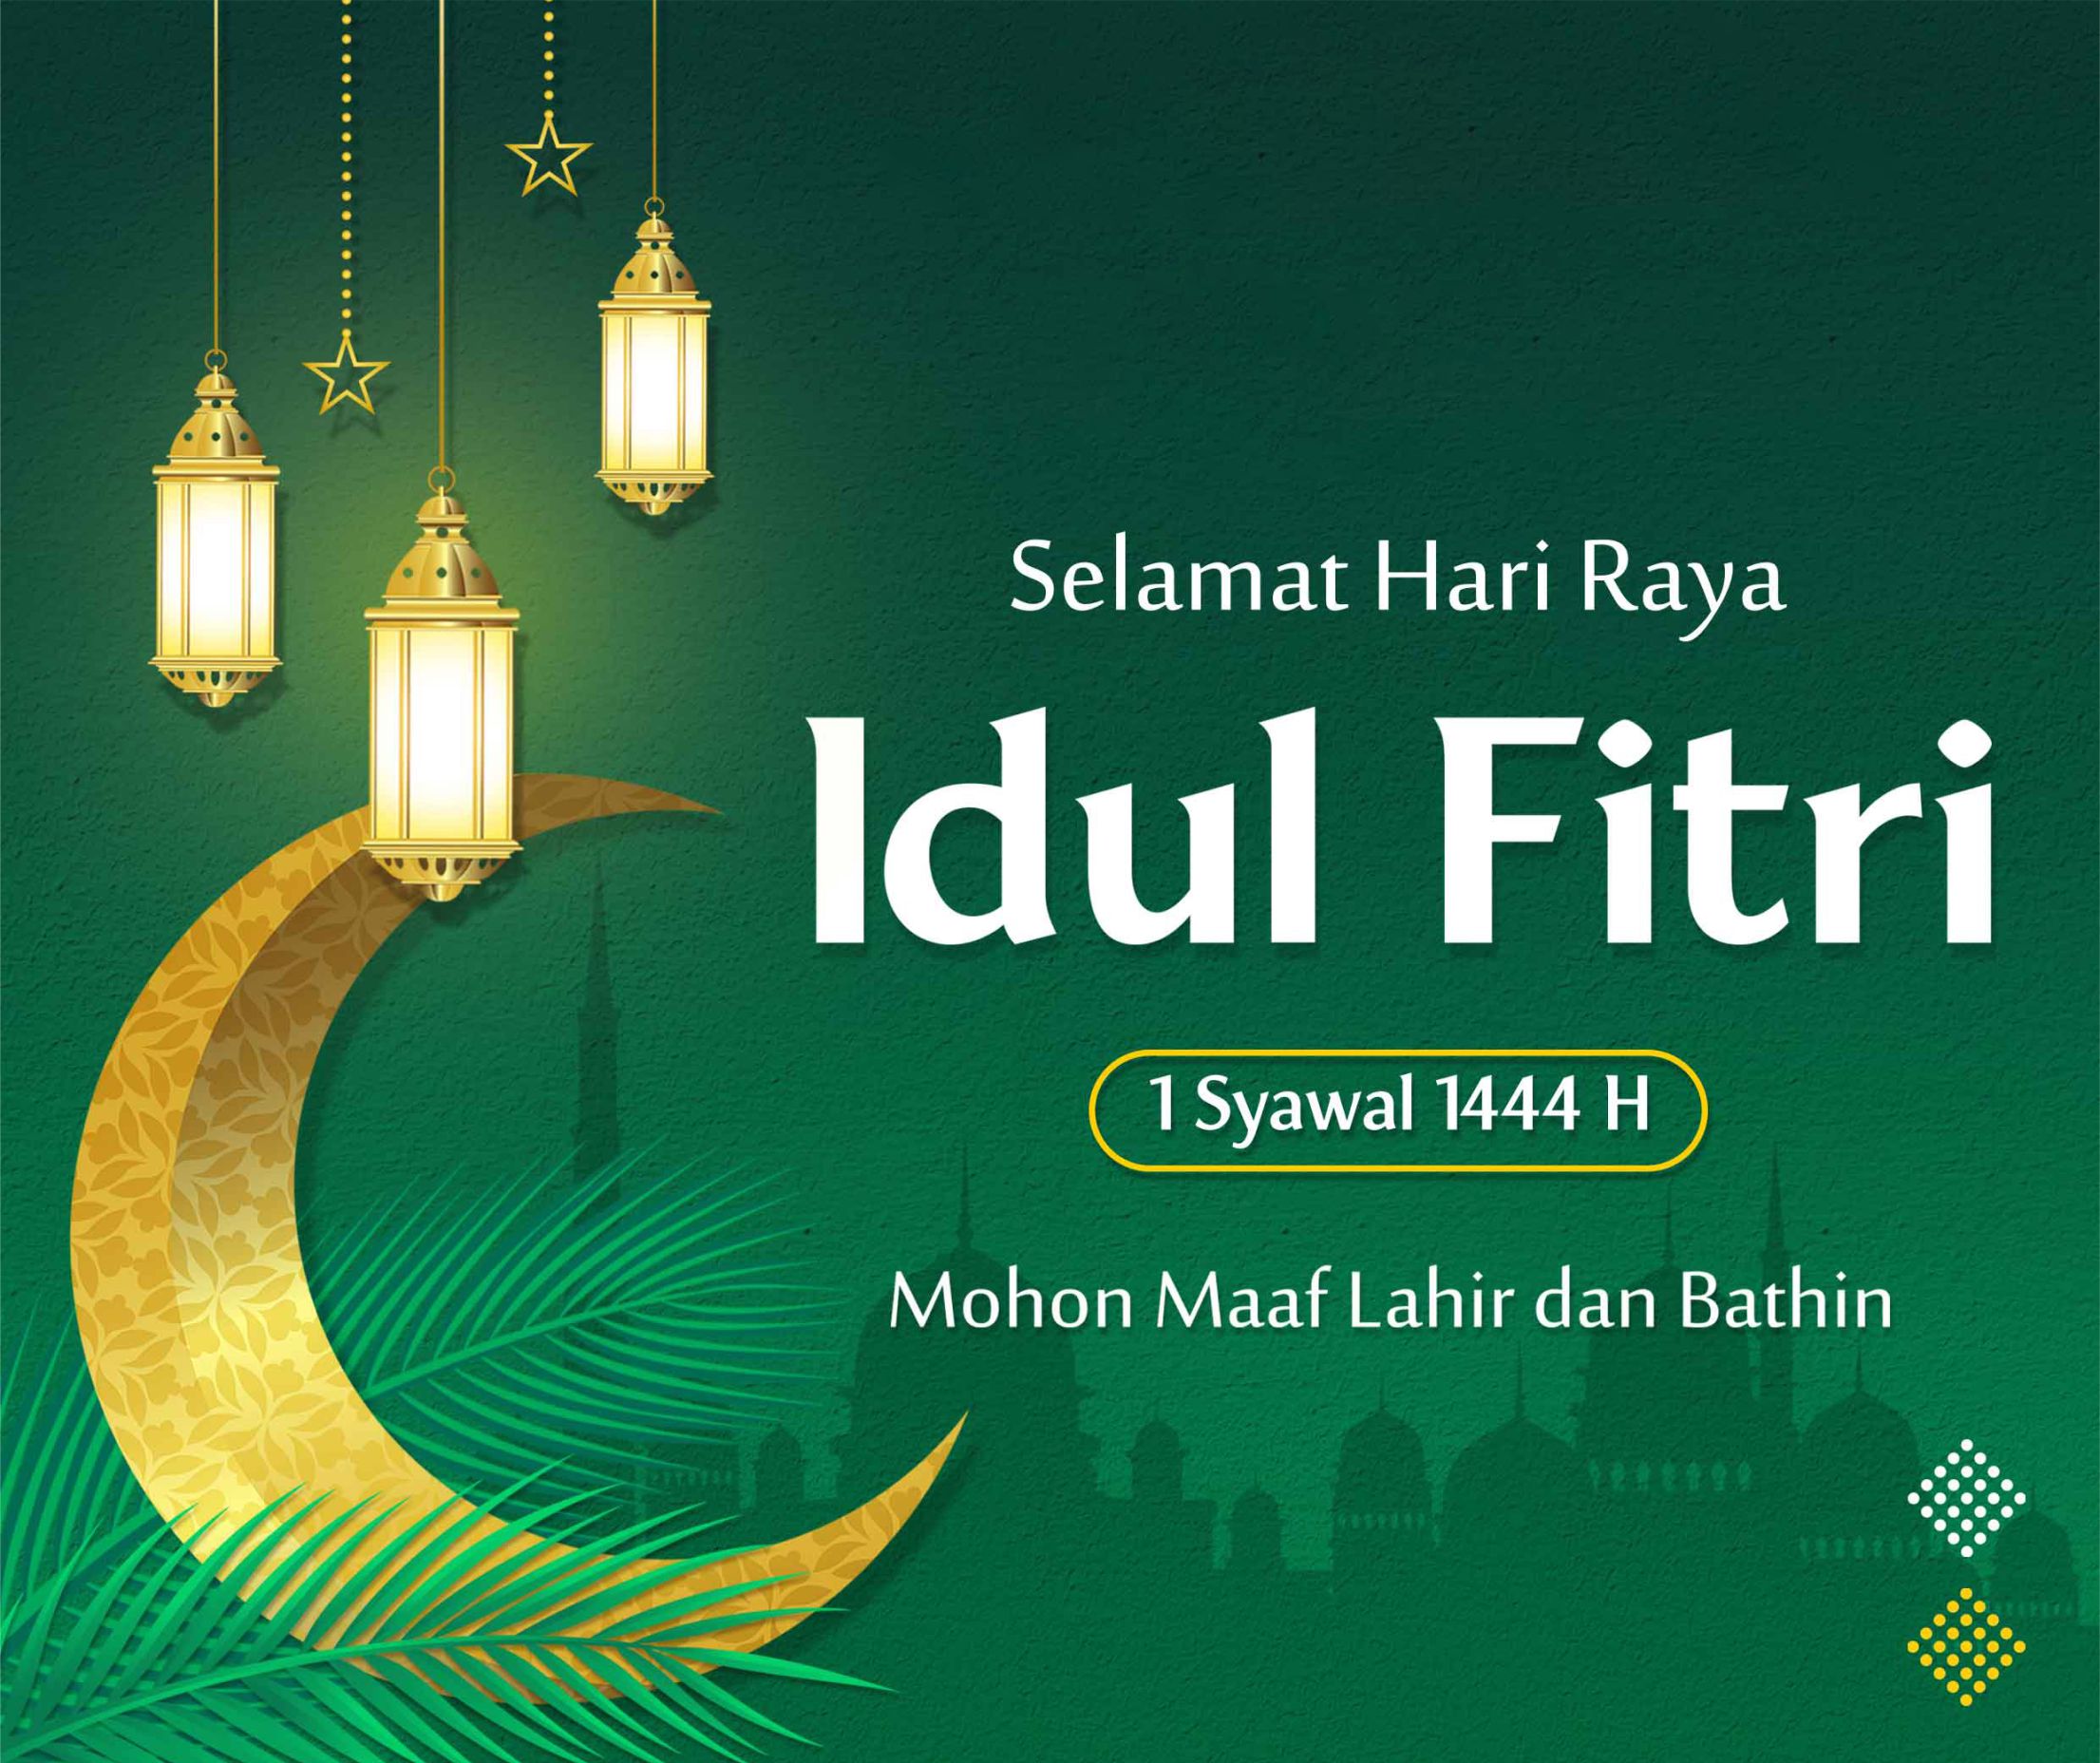 Selamat Hari Raya Idul Fitri 1 Syawal 1444 H